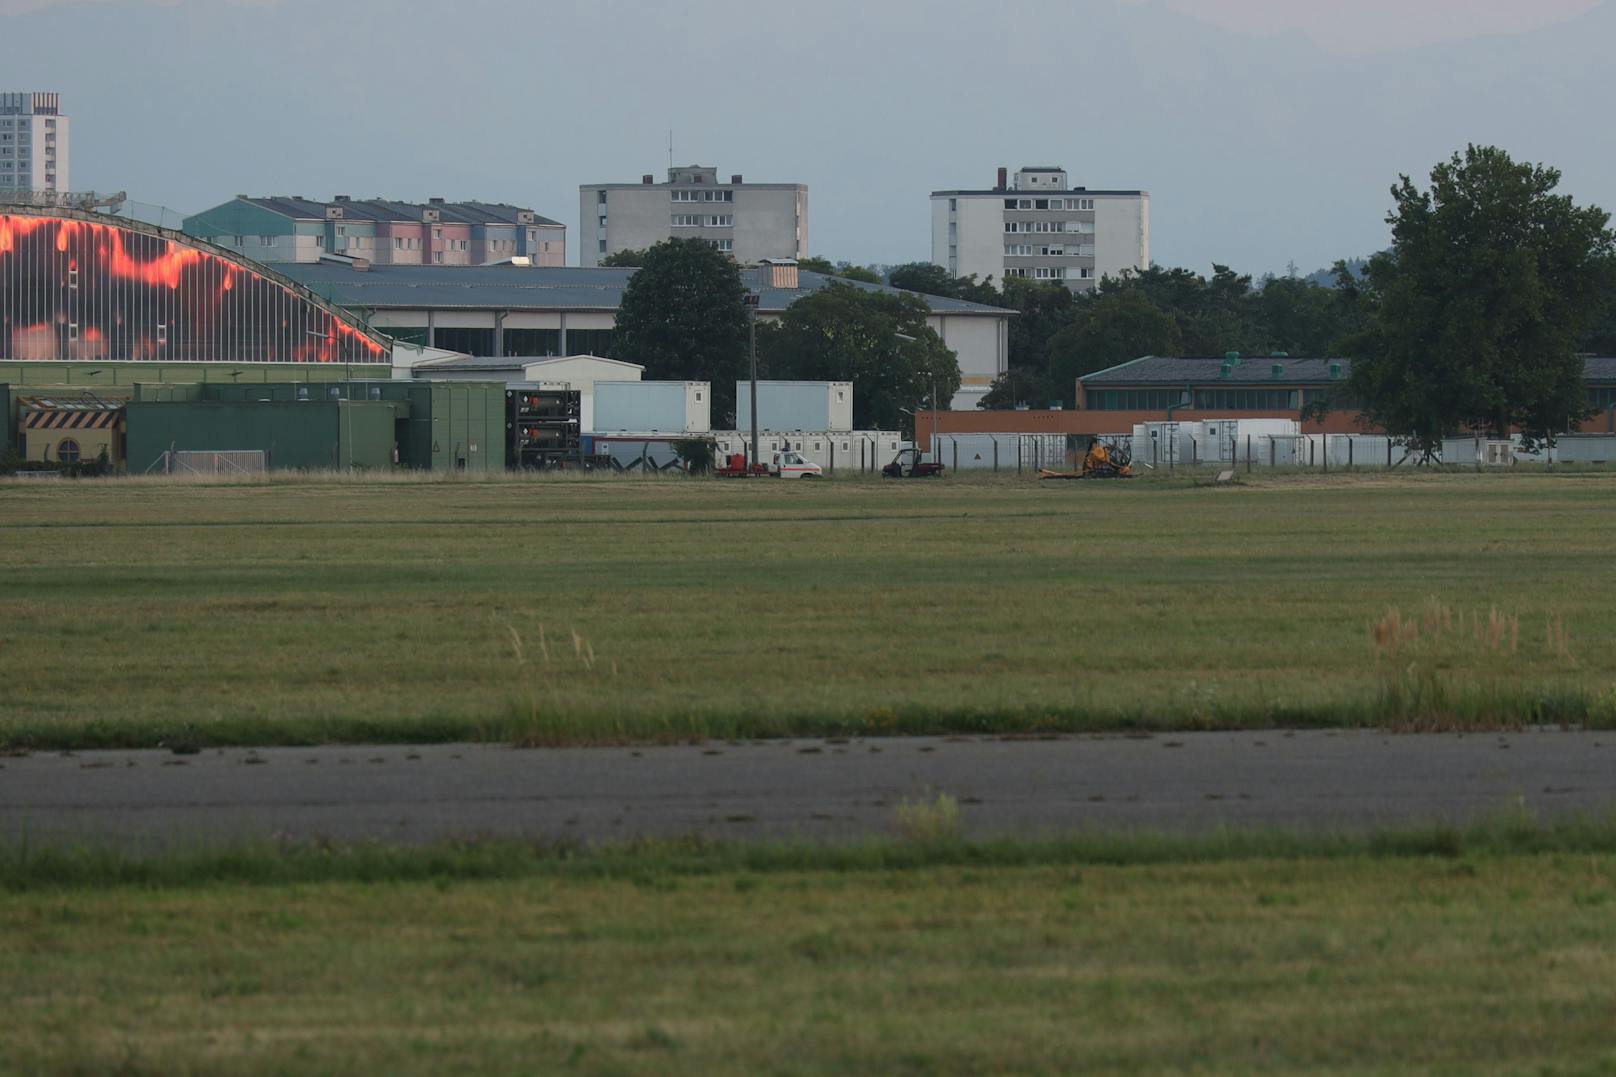 Die Feuerwehr wurde zu einem Brandalarm auf den Flugplatz in Wels-Neustadt alarmiert. Wenig später war klar, dass es sich um einen Hubschrauberabsturz im Gelände des Flugplatzes handeln dürfte.